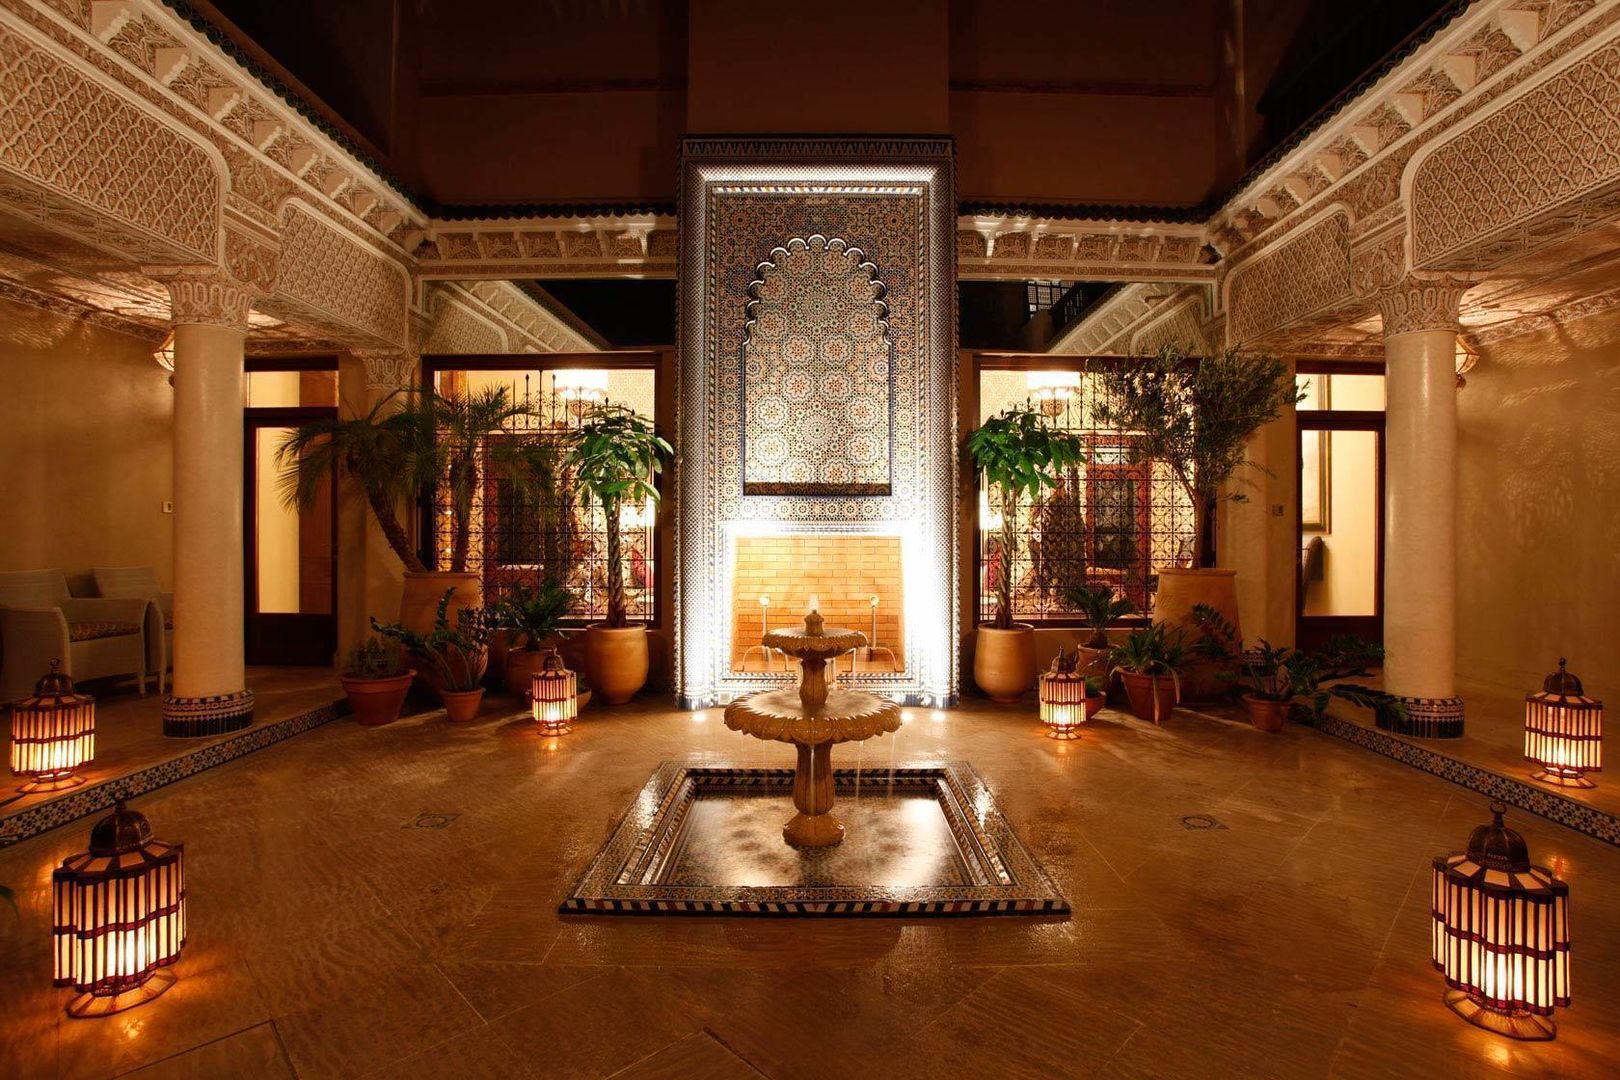 Private Villa, Morocco, Moroccan Bazaar Moroccan Bazaar Dinding & Lantai Gaya Mediteran Wall & floor coverings